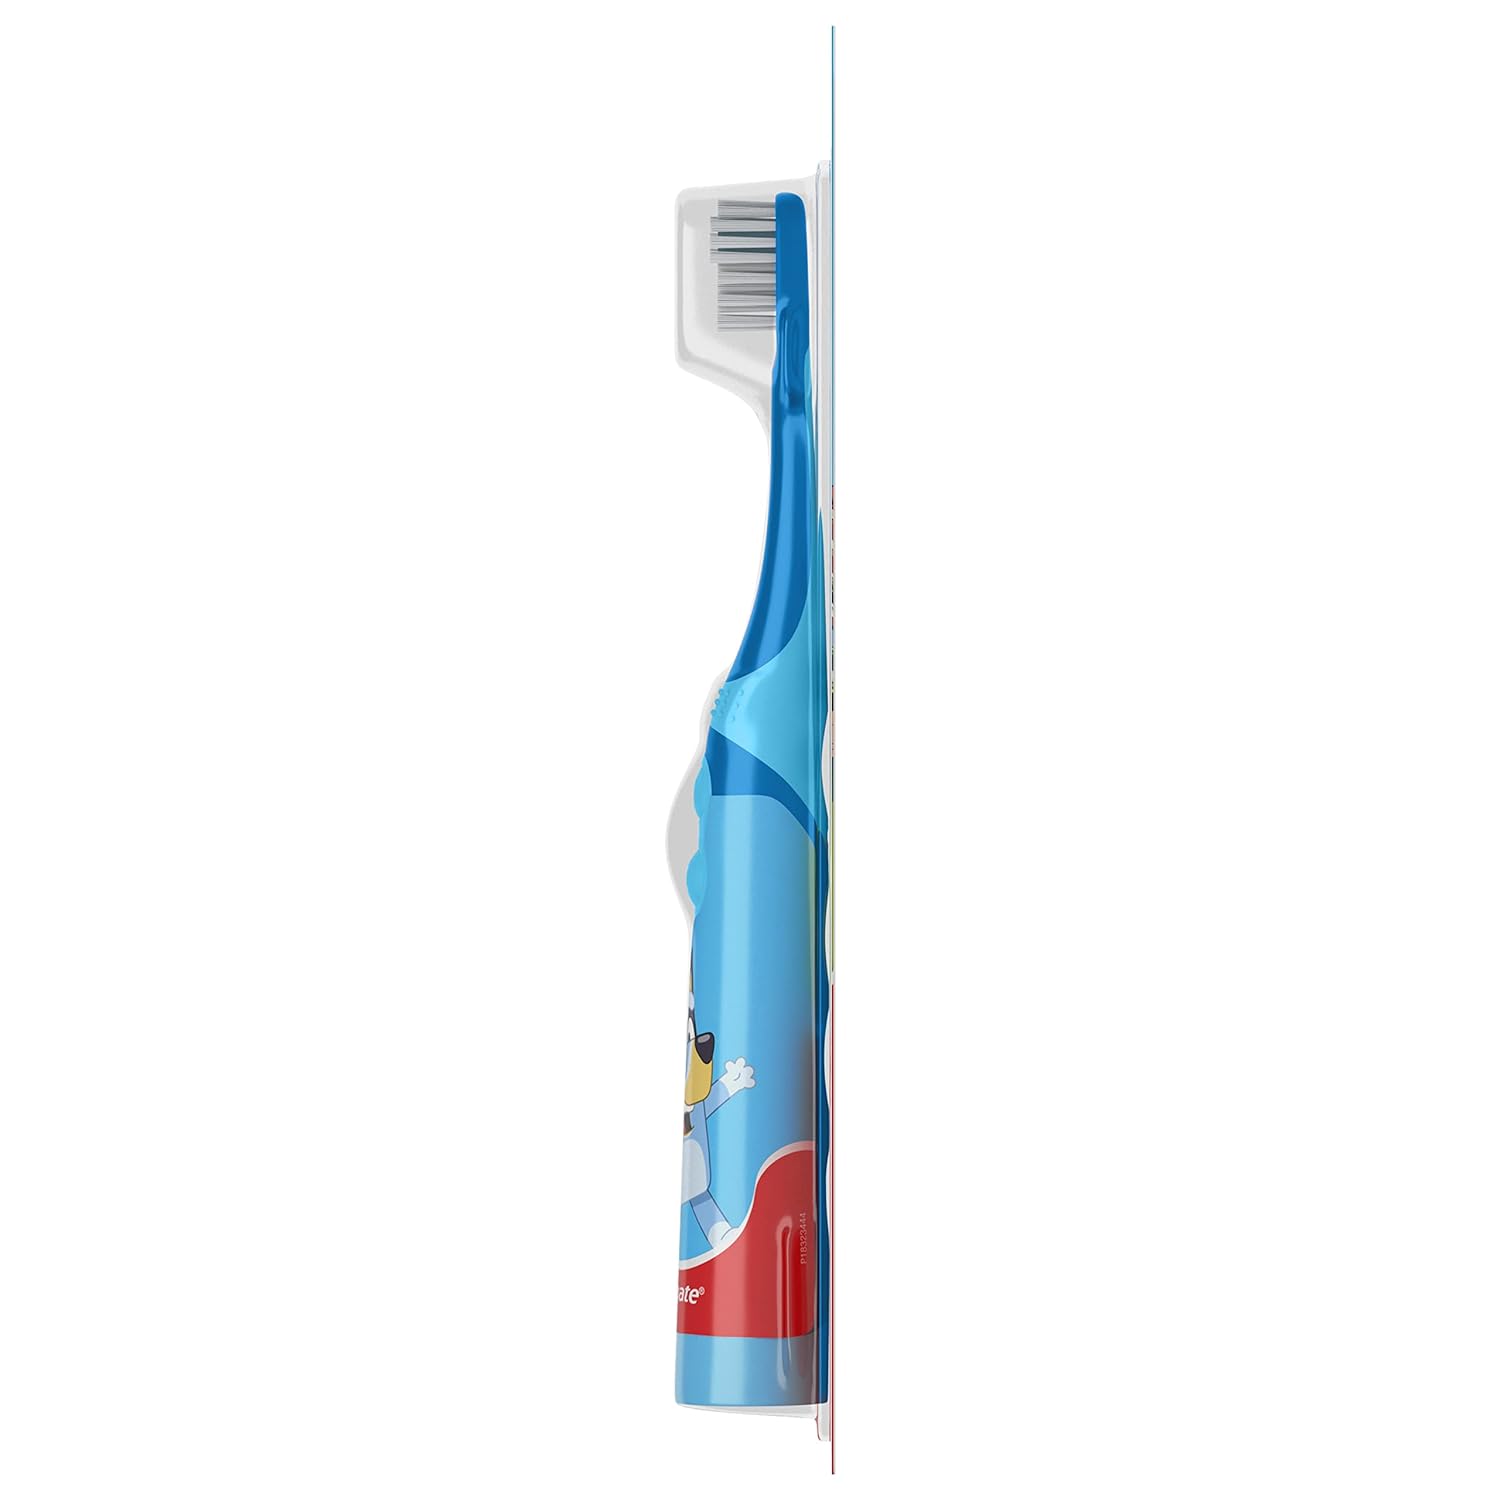 فرشاة أسنان كولجيت كيدز تعمل بالبطارية - أزرق